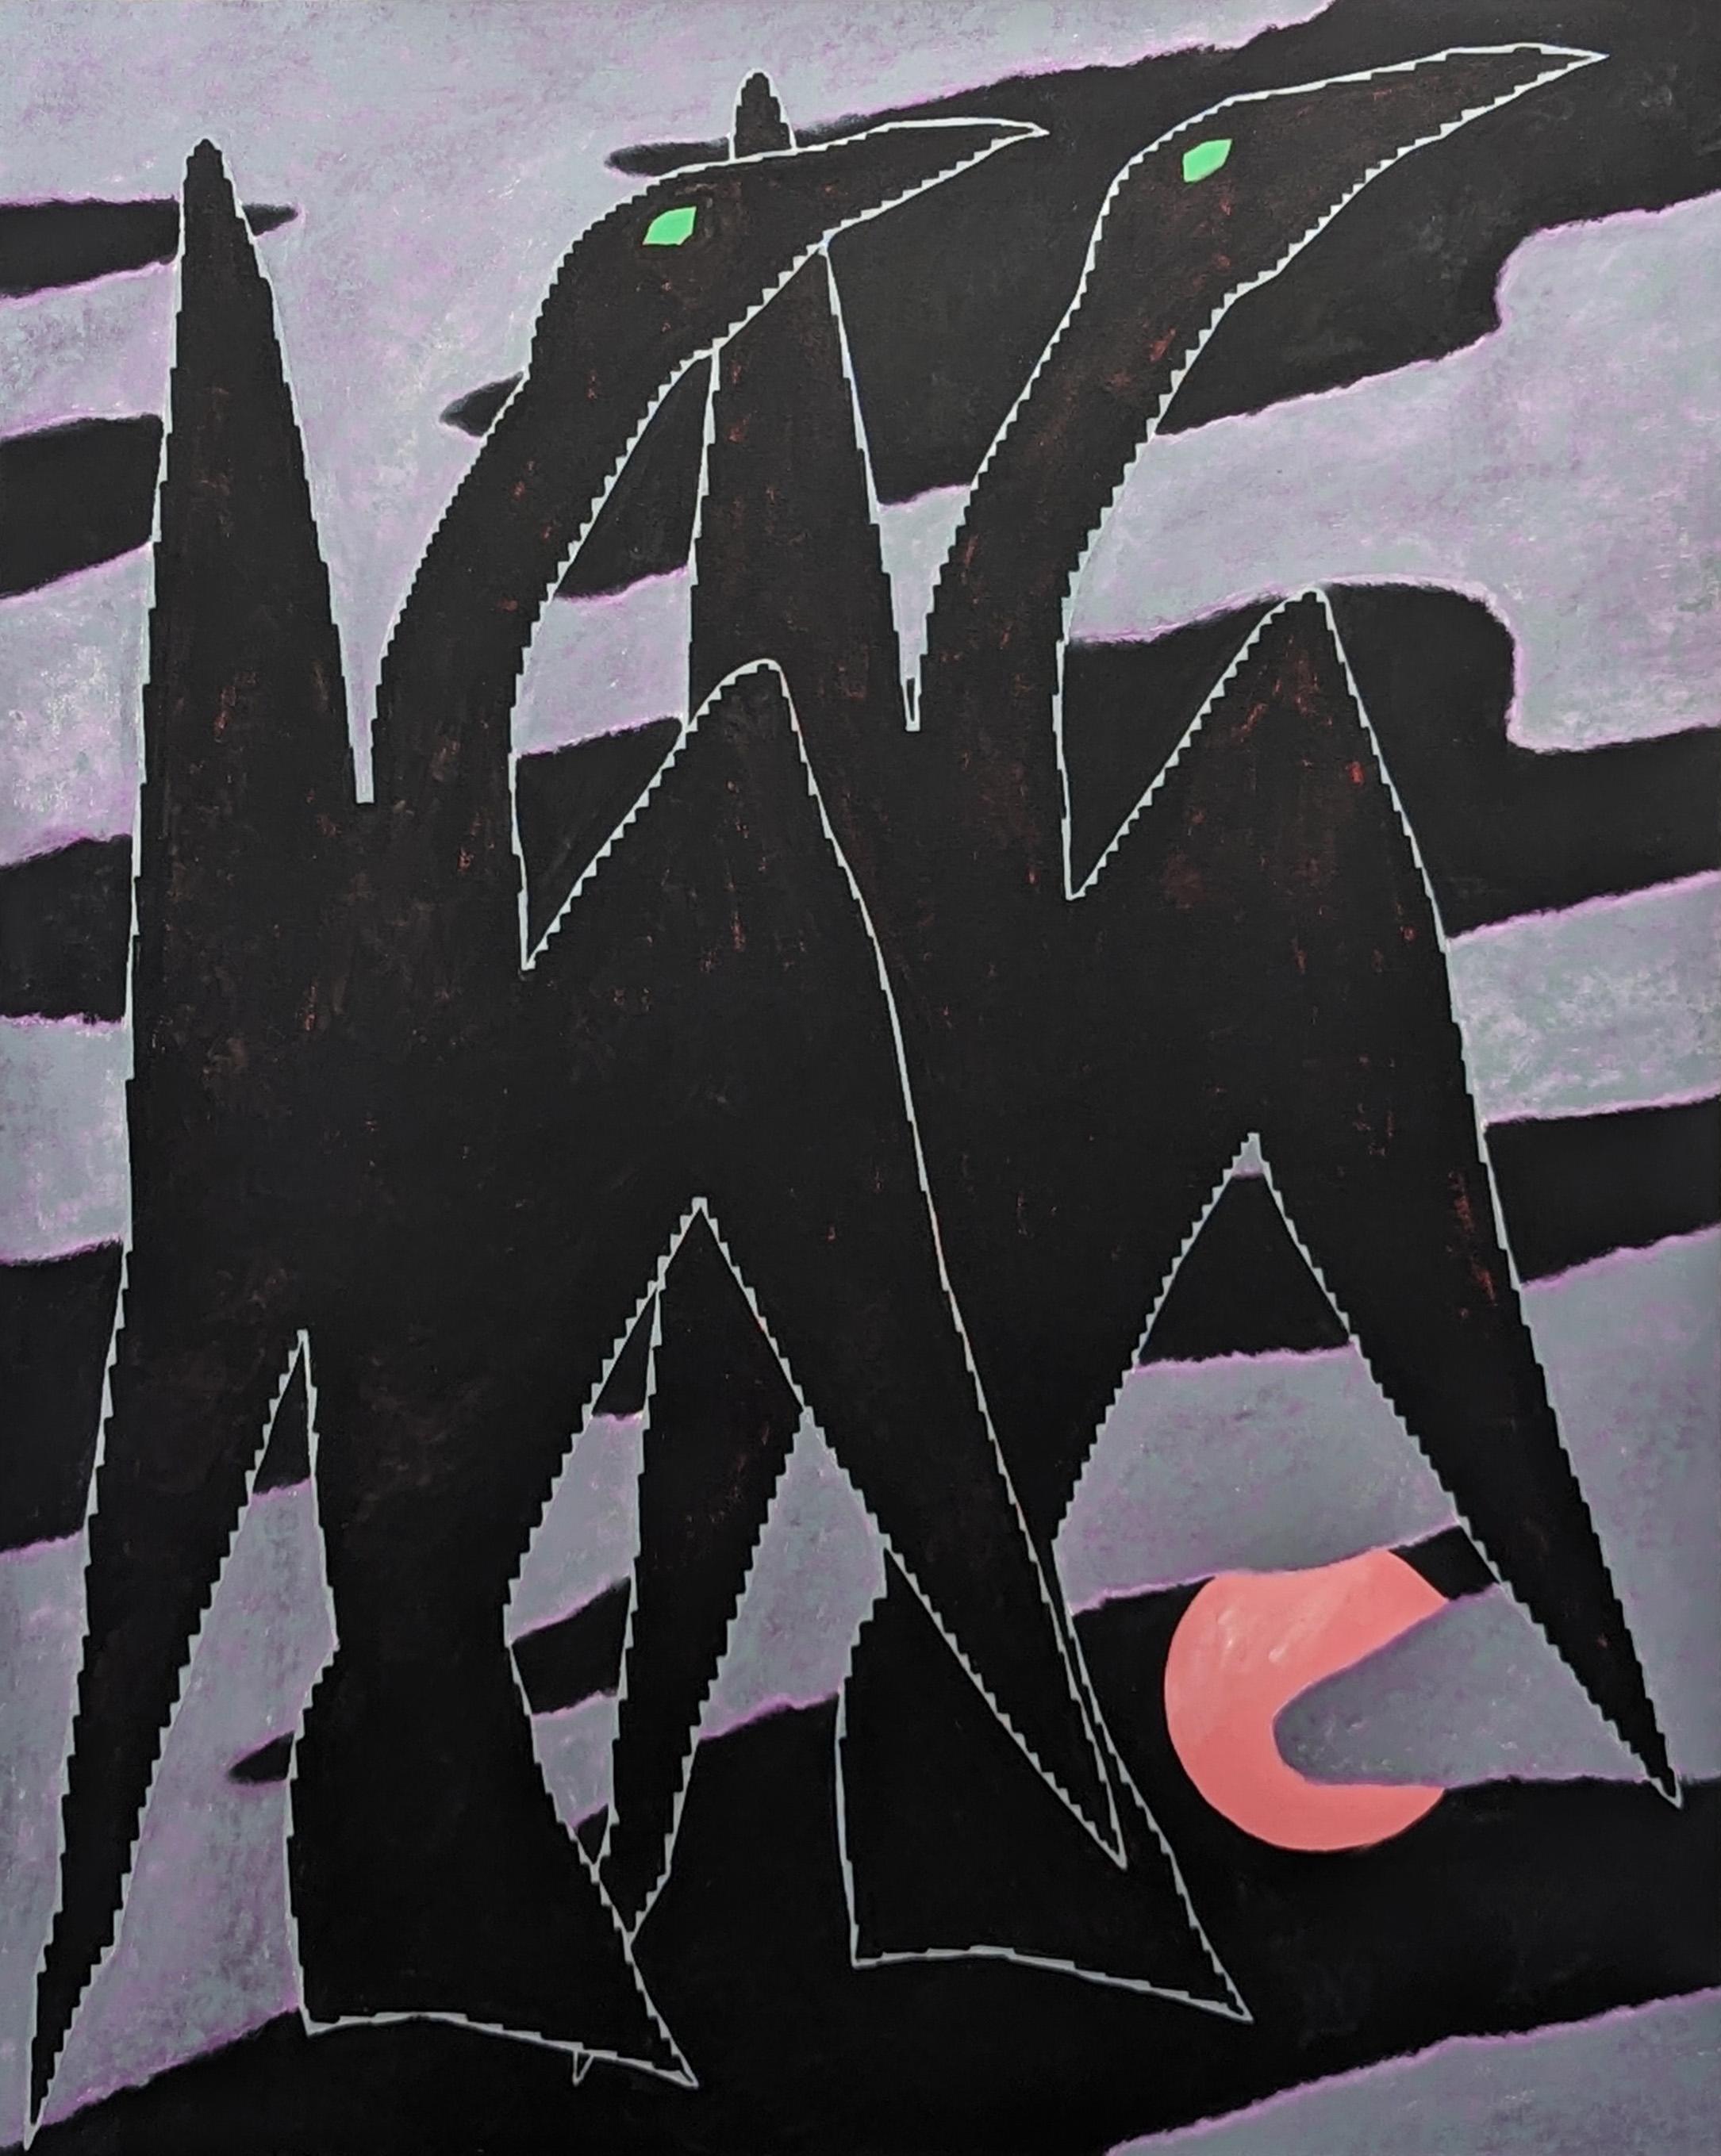 Emmanuel Araujo Animal Painting - "Cormorant" Contemporary Purple & Black Geometric Abstract Bird Painting